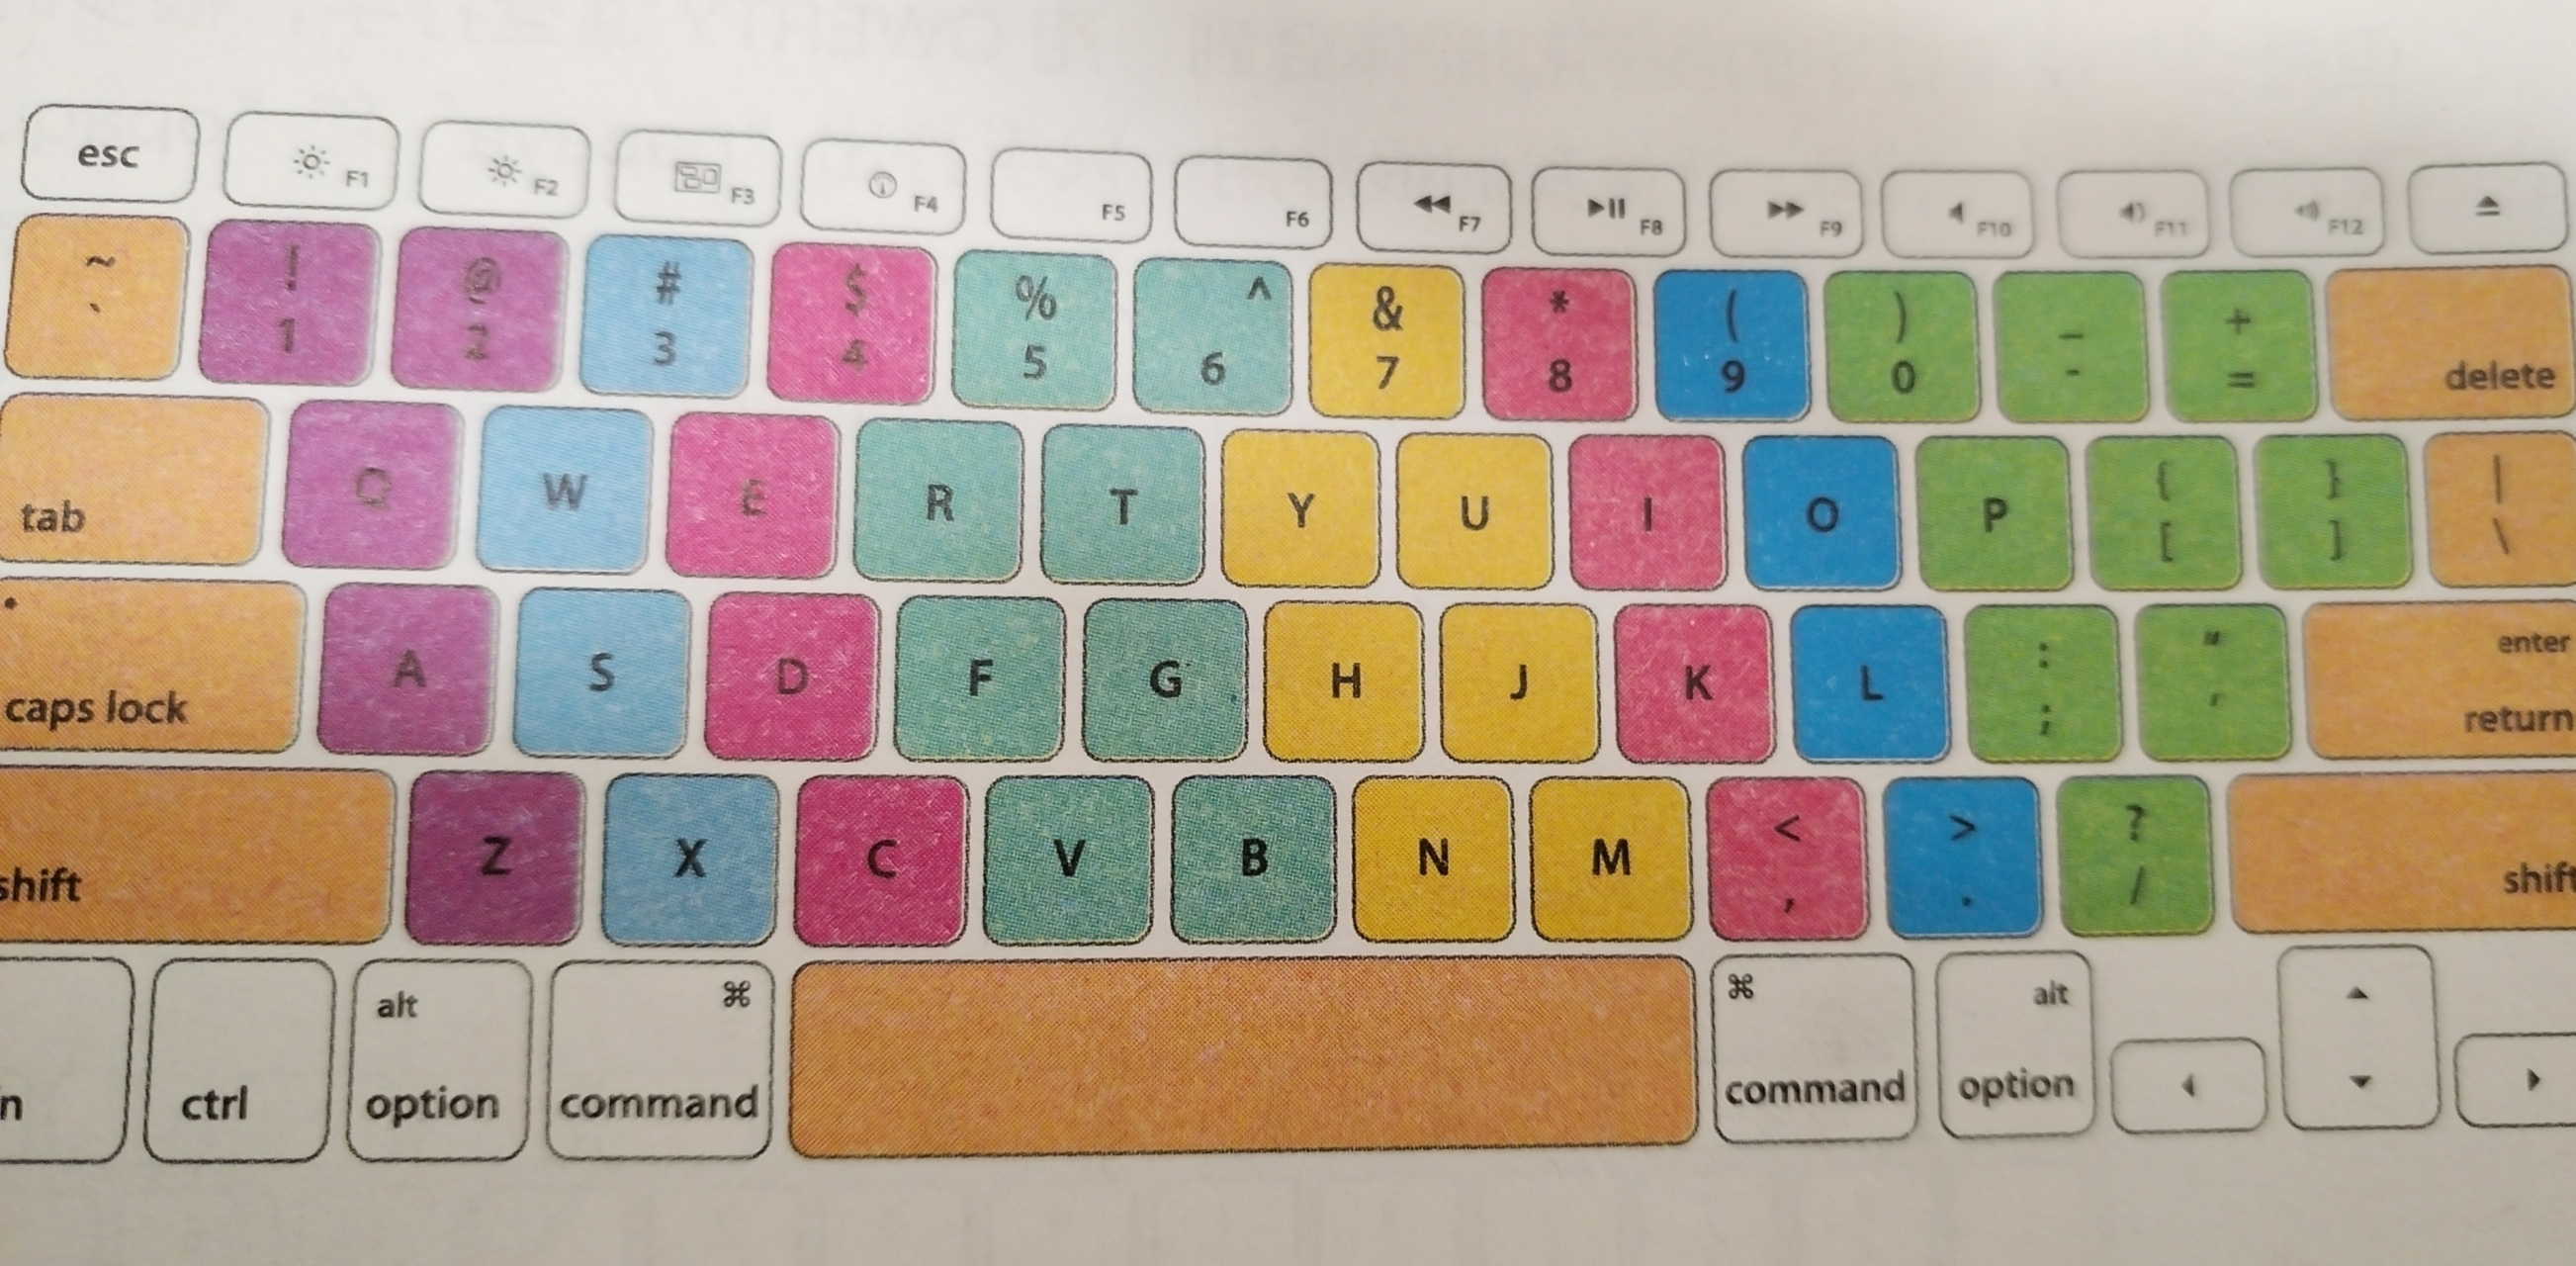 键盘上字母的排列顺序很乱,为什么不按abcd……的顺序排列呢,这样打字